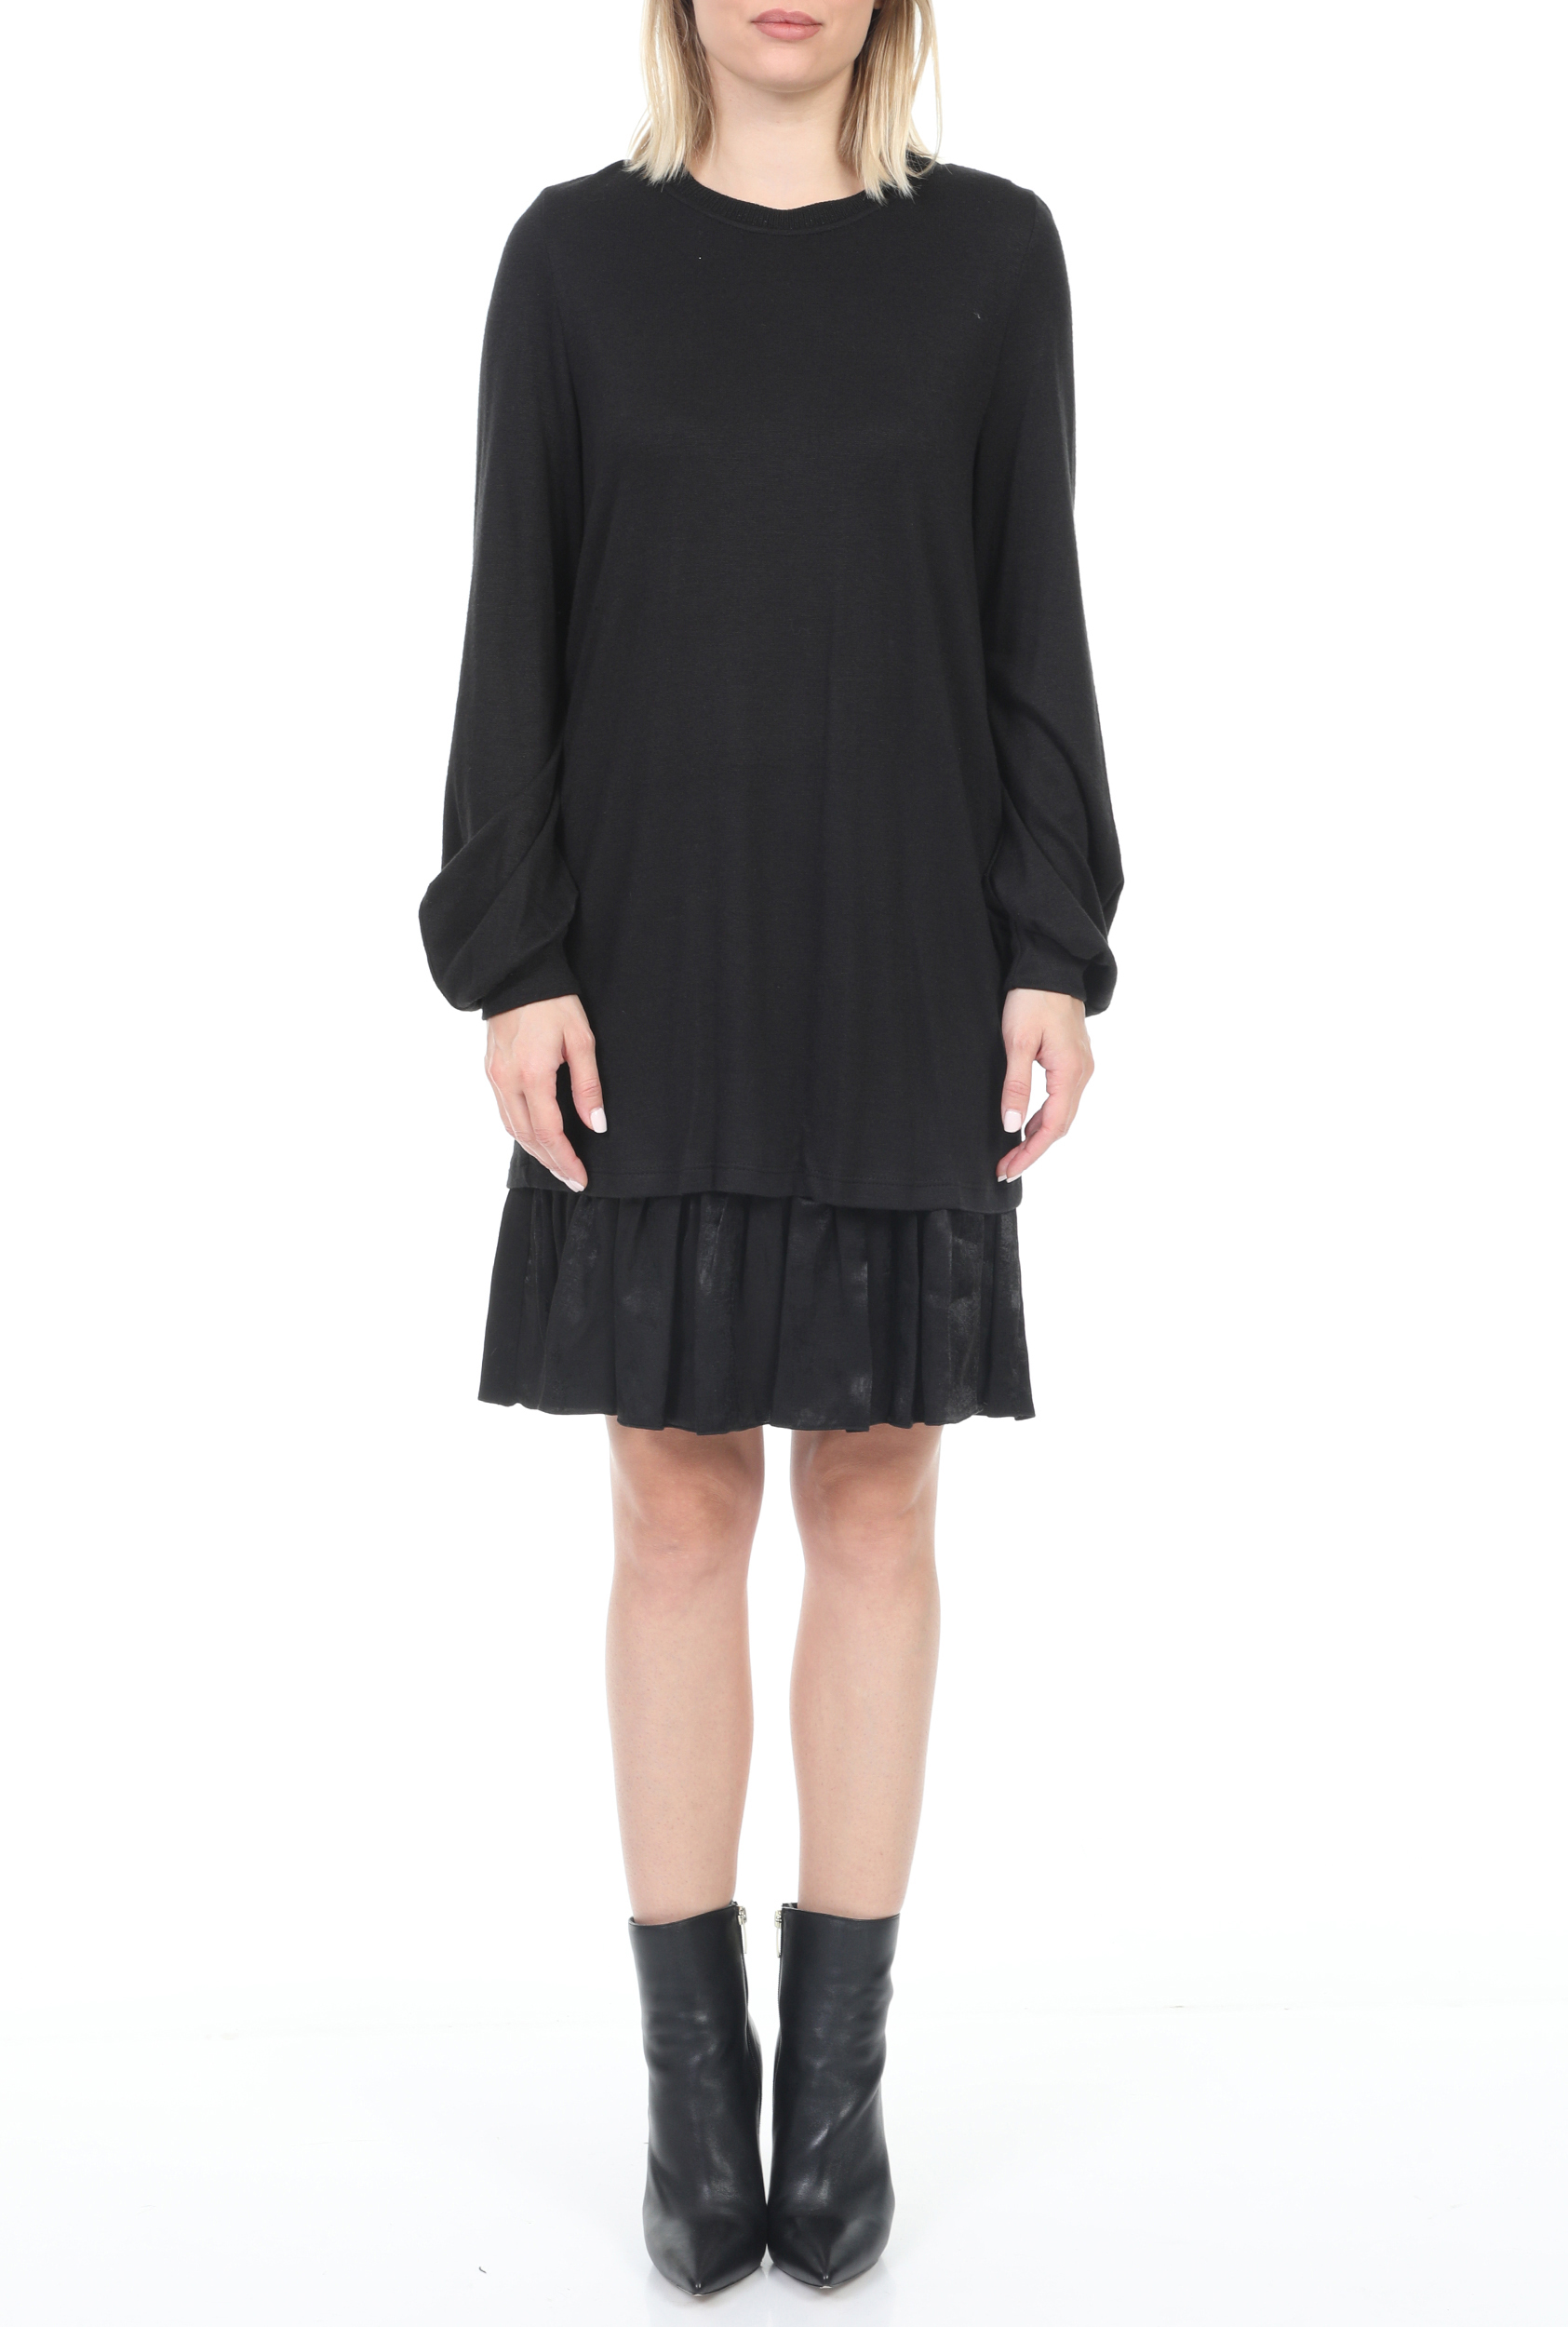 Γυναικεία/Ρούχα/Φόρεματα/Μίνι KOCCA - Γυναικείο mini φόρεμα KOCCA HEROICA μαύρο